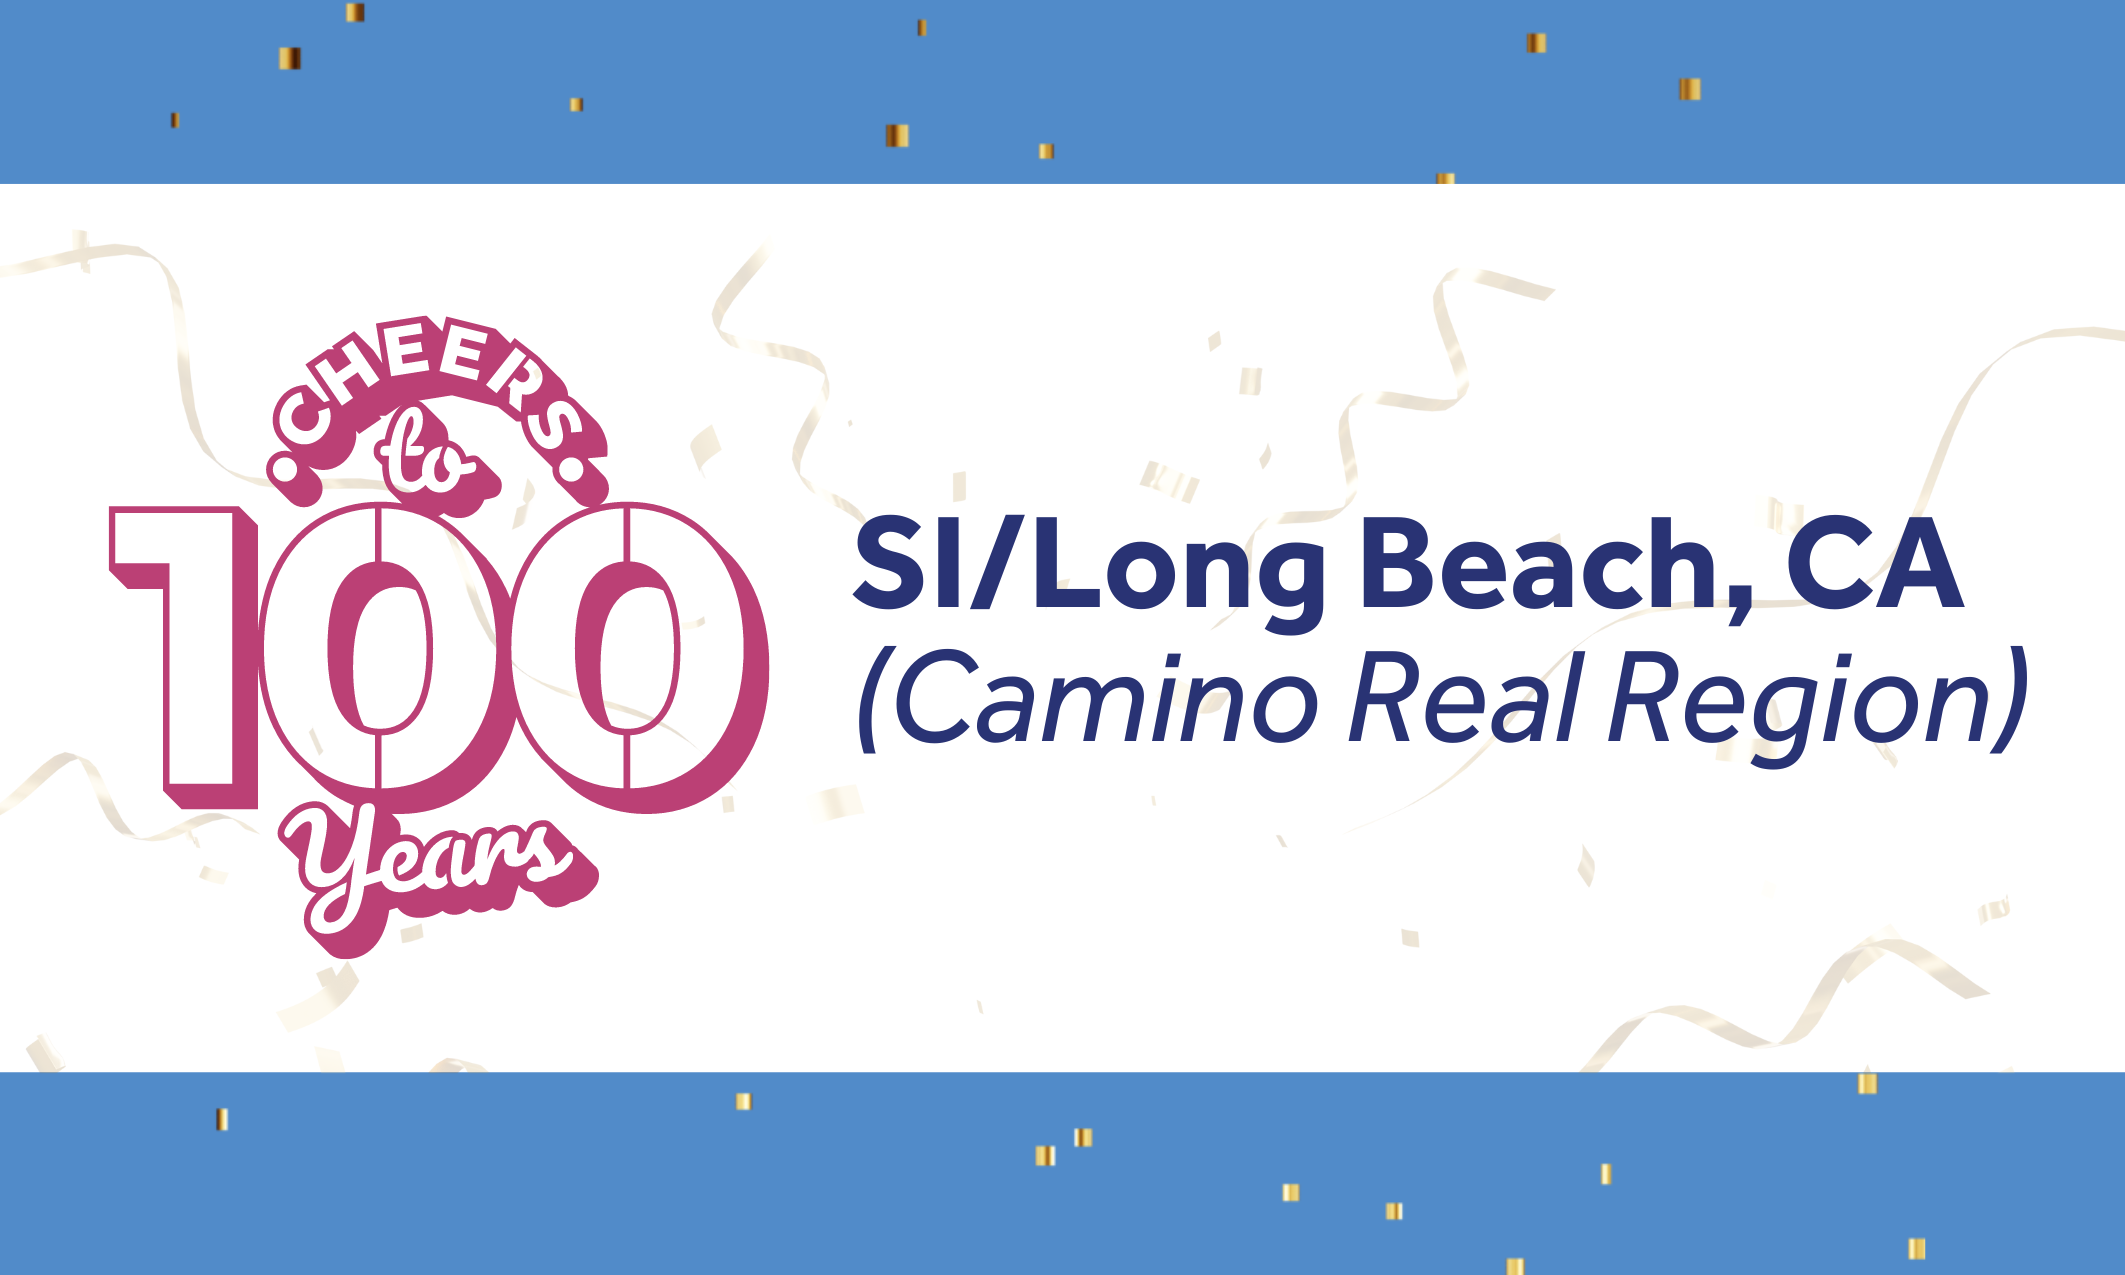 100 años de servicio para SI/Long Beach, CA